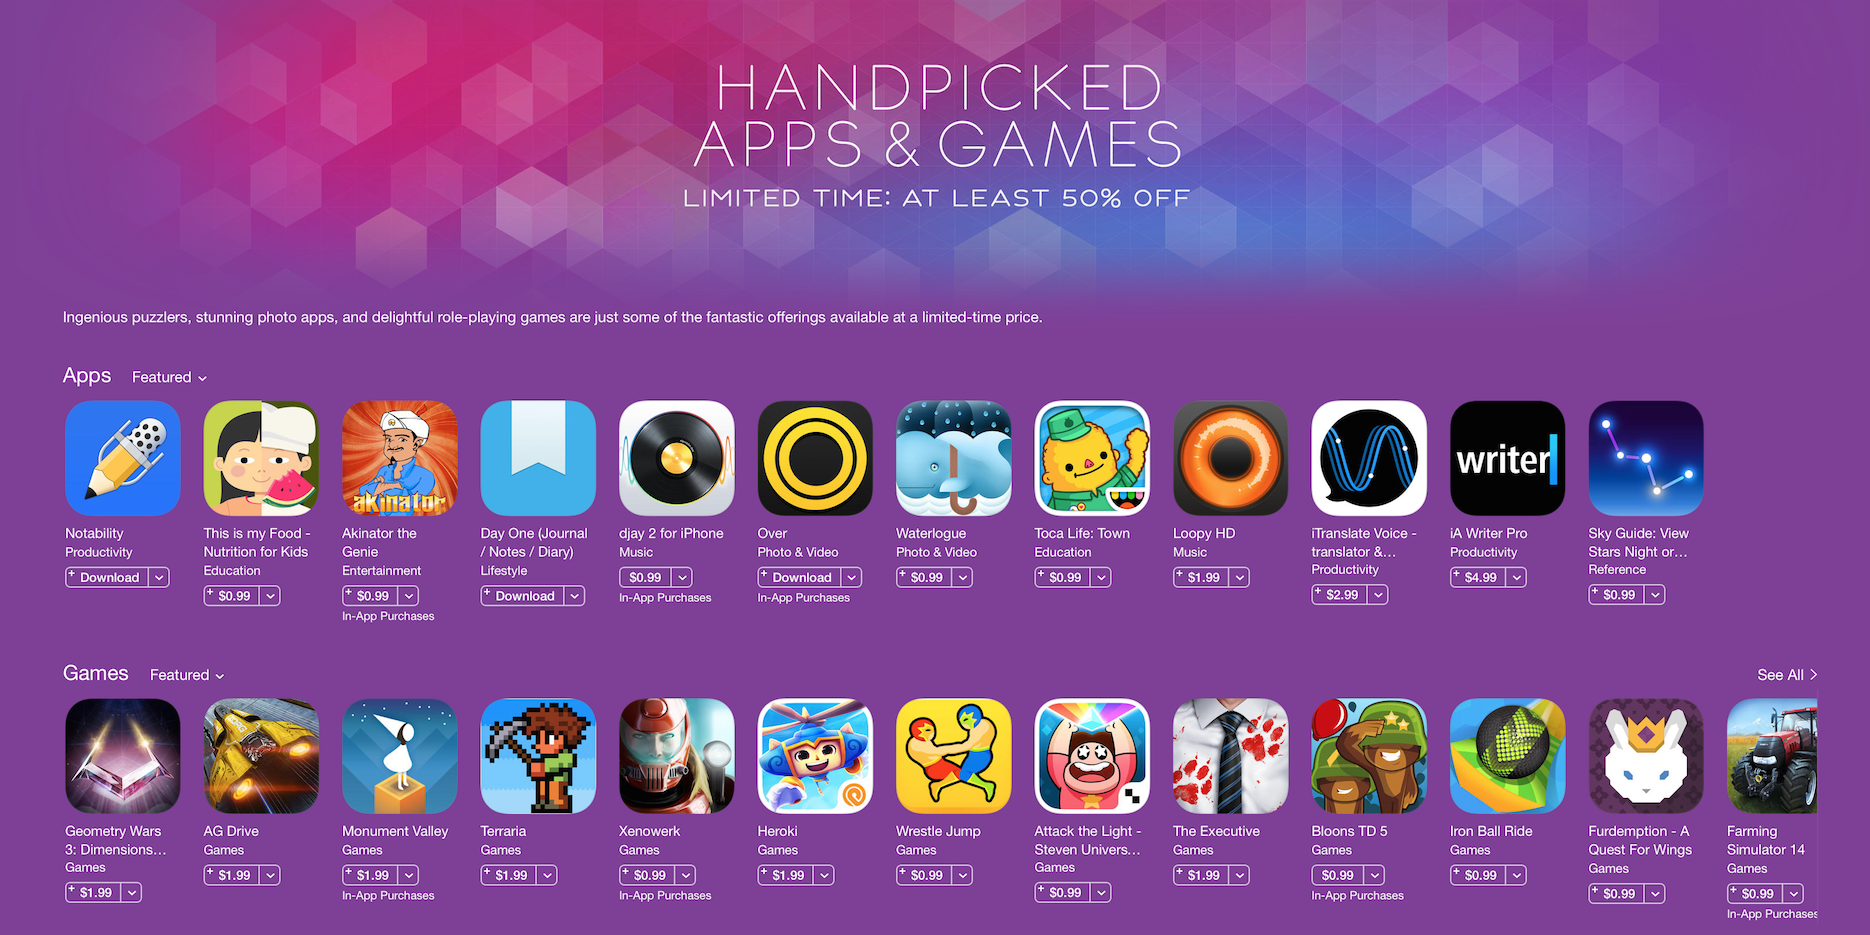 apple-hqndpicked-ios-app-sale-01